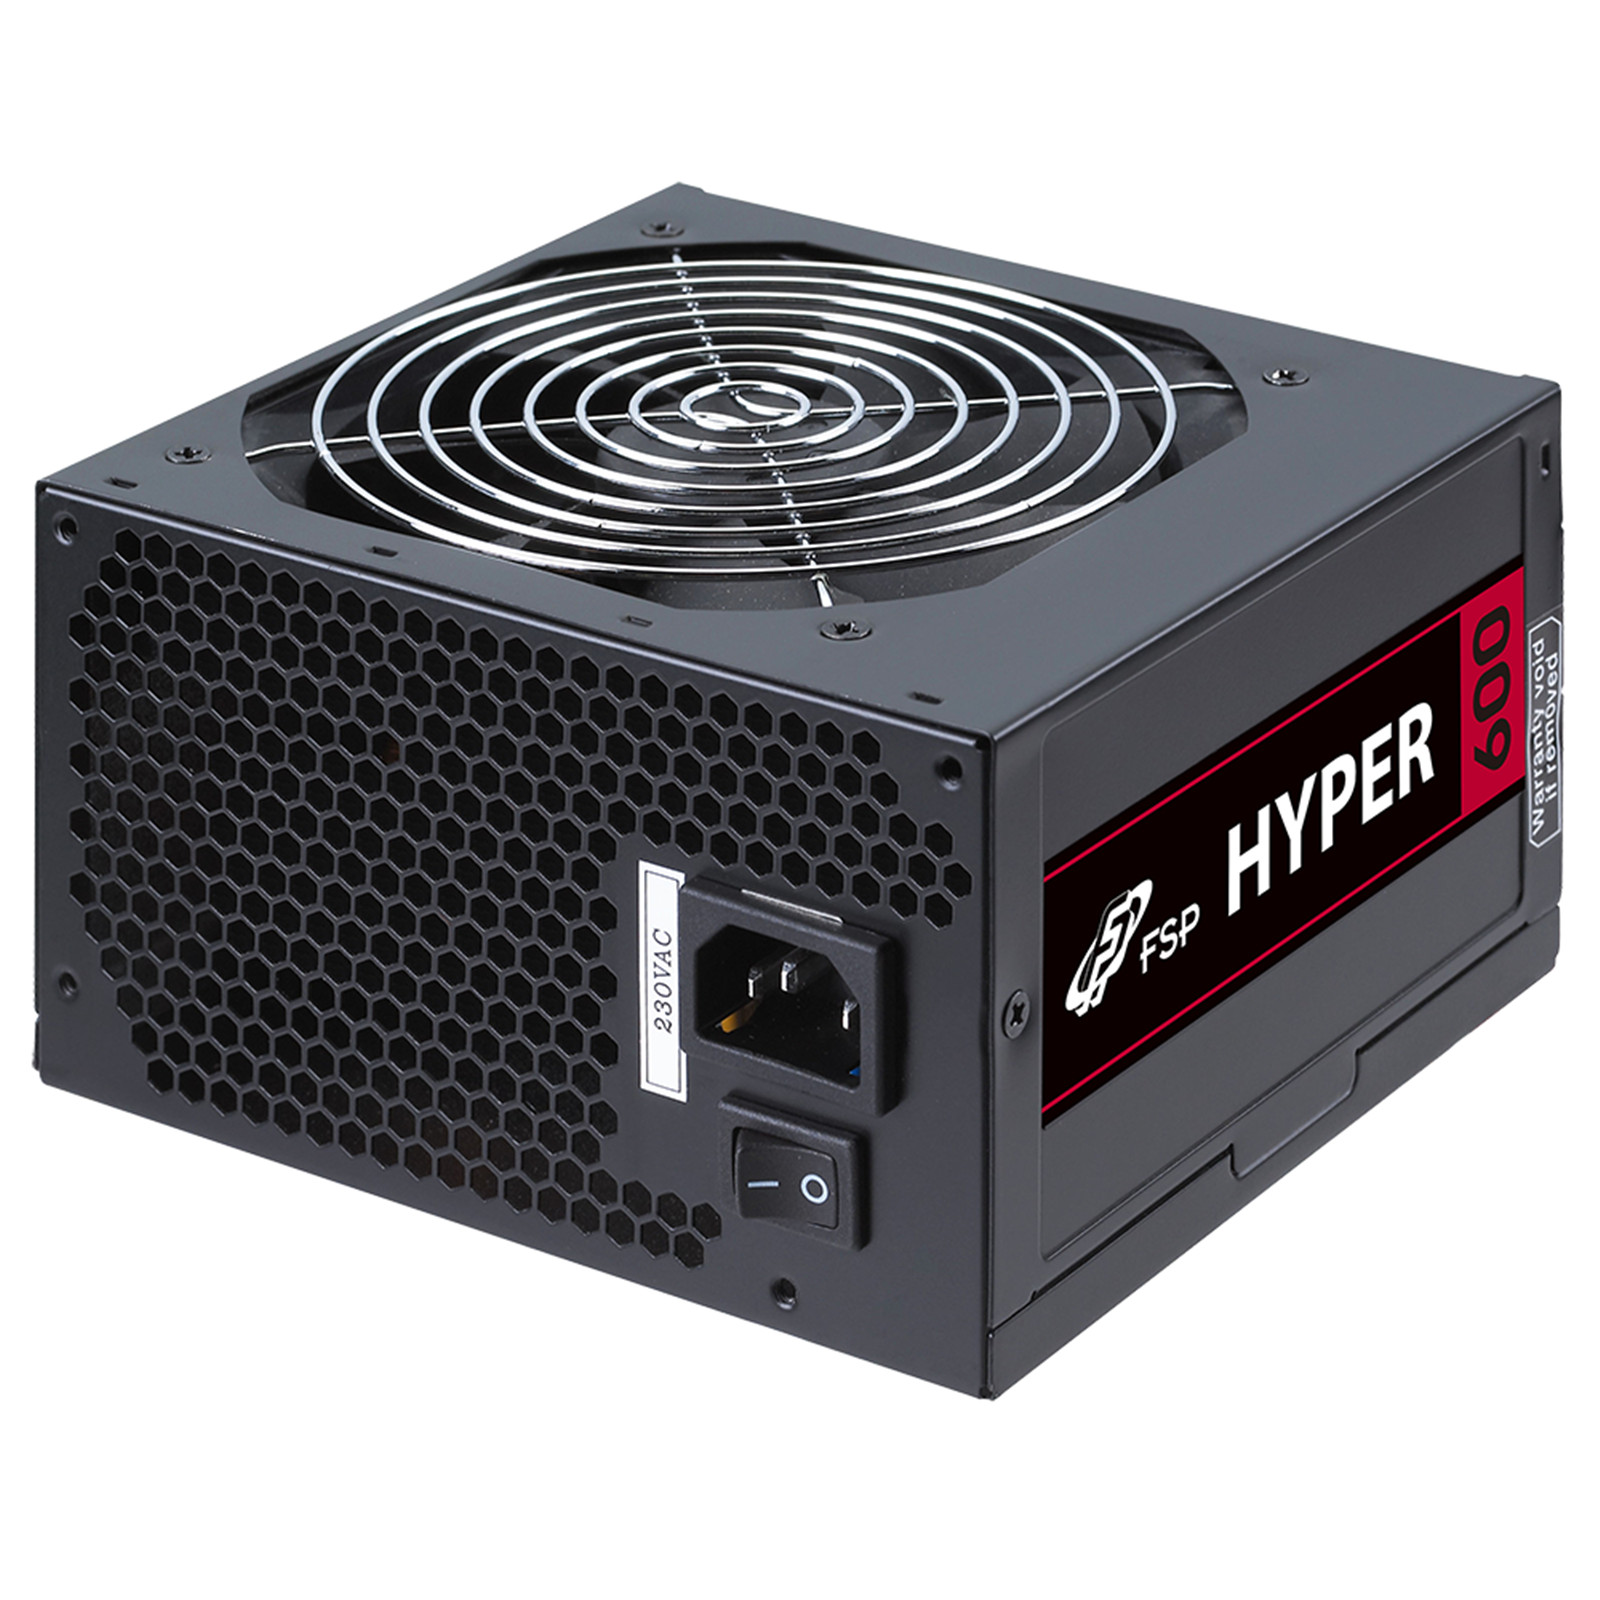 FSP HYPER S 600W 12cm FANLI POWER SUPPLY HP600S